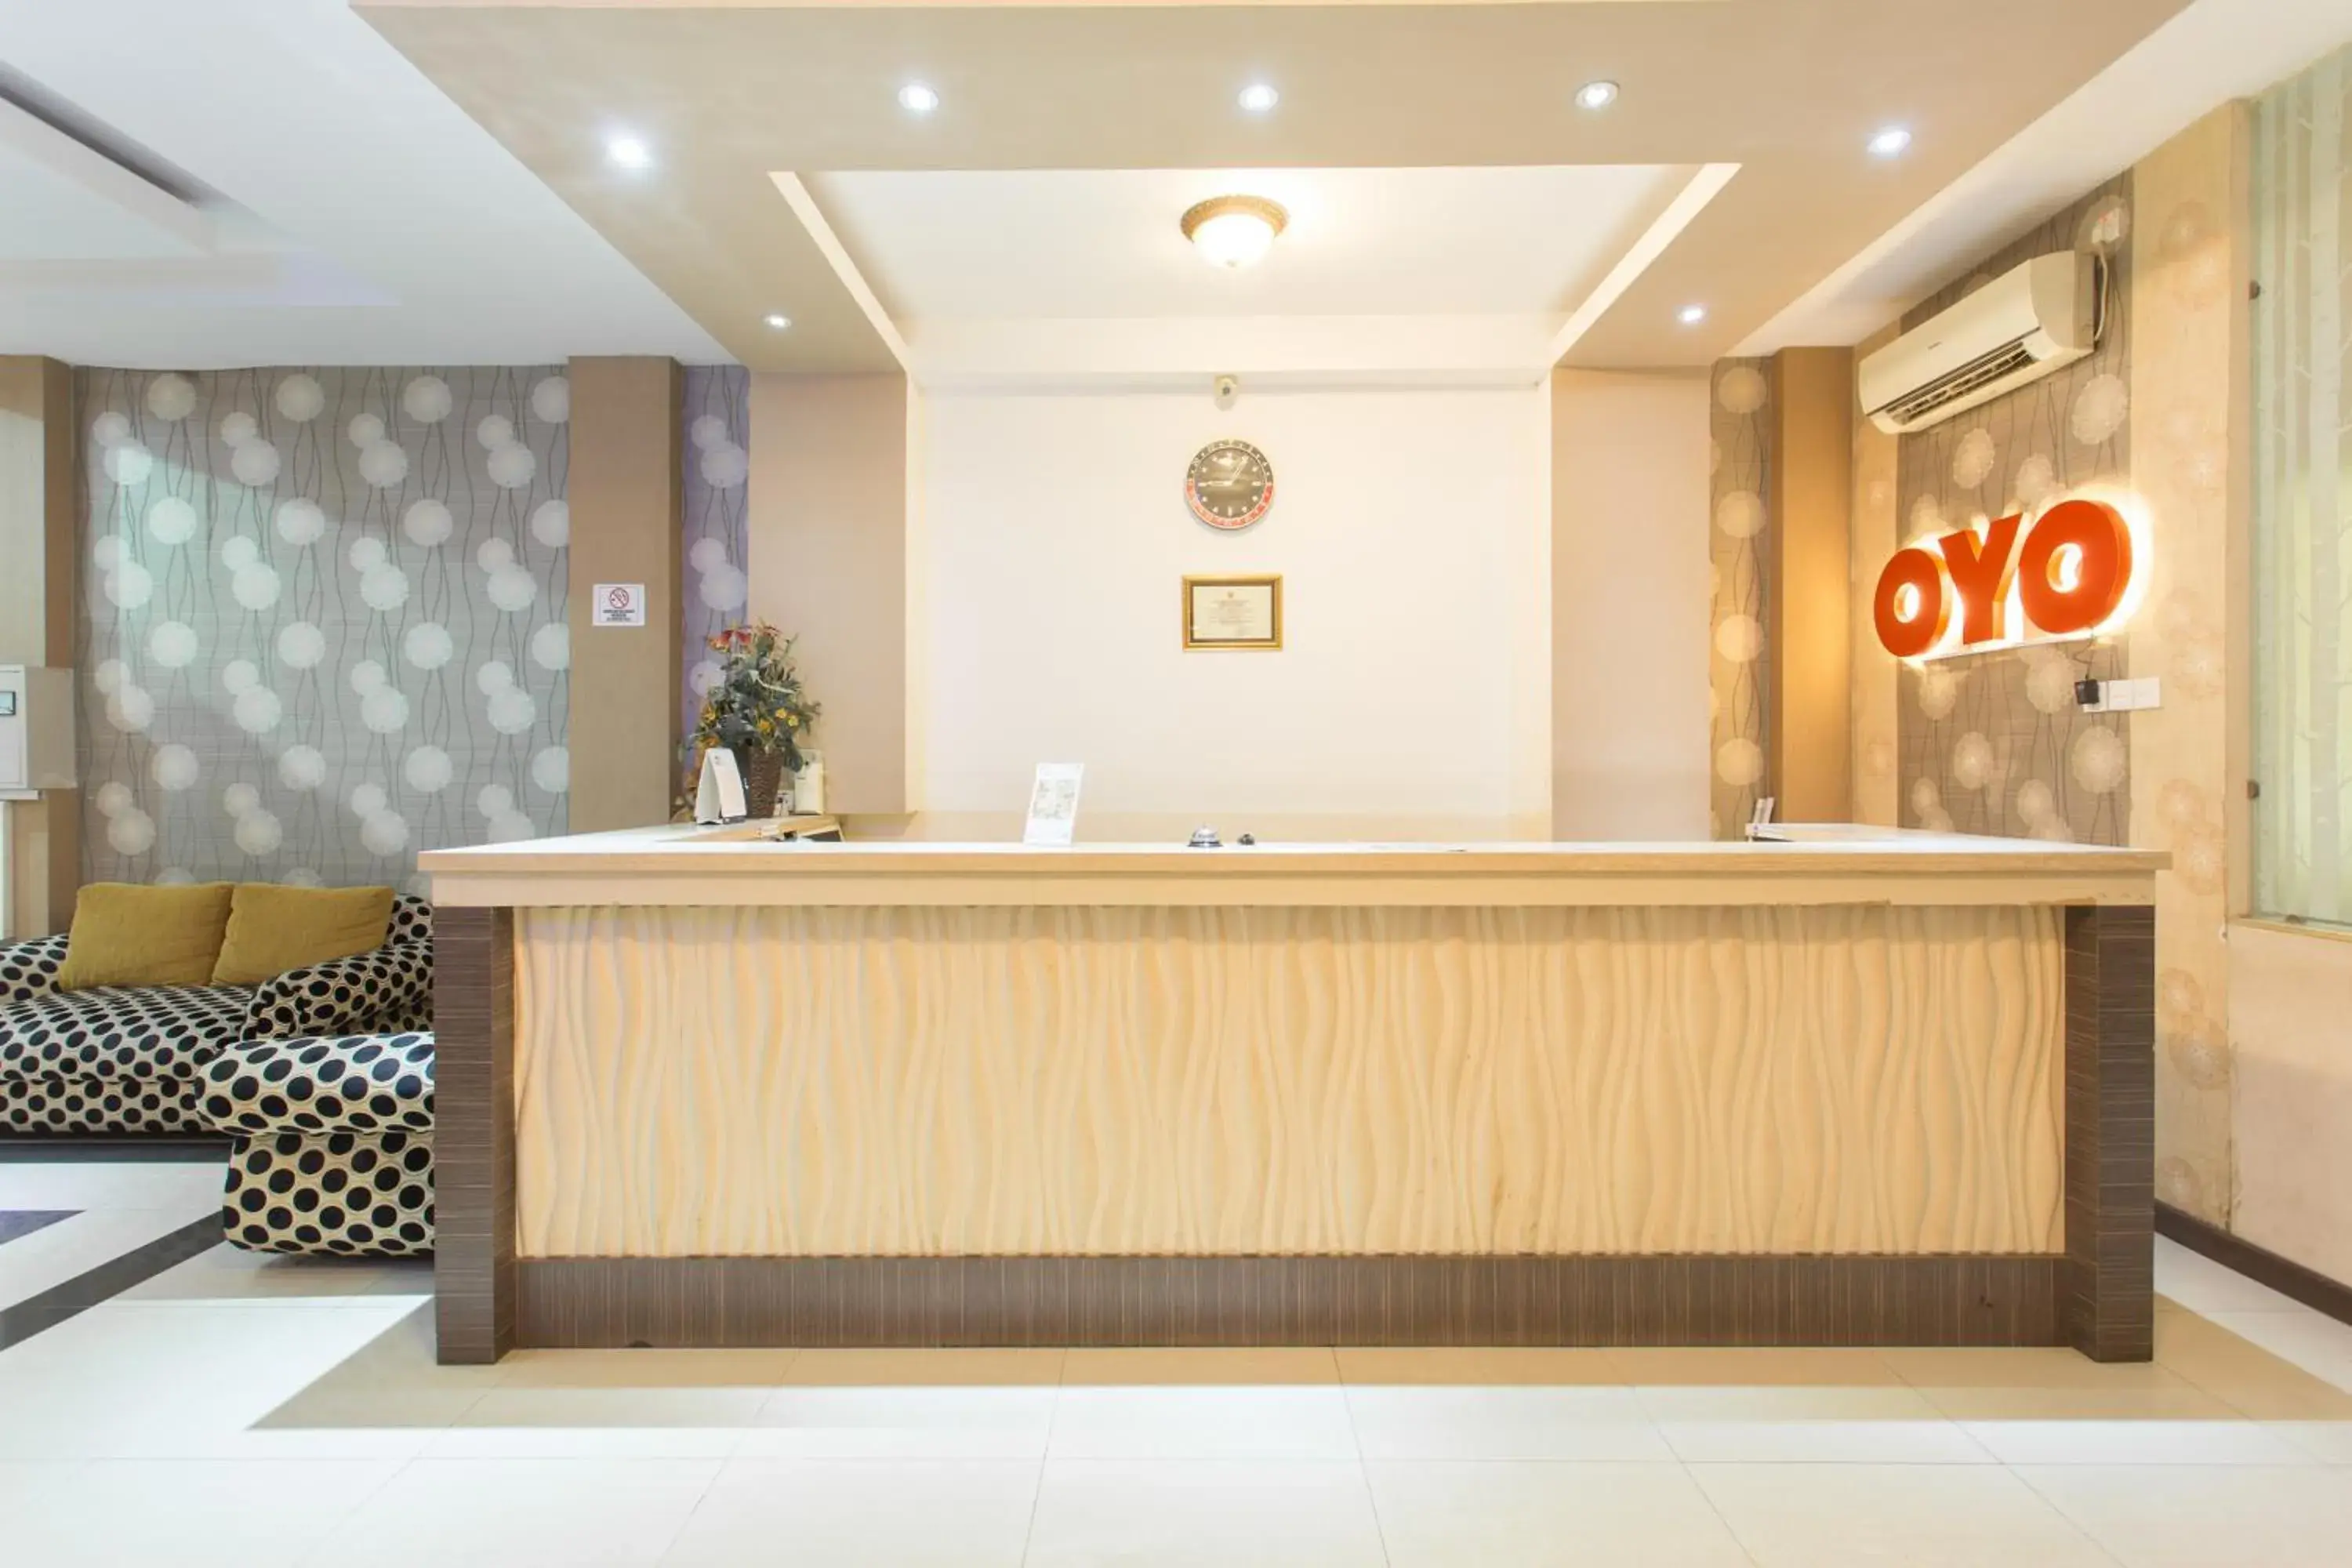 Lobby or reception, Lobby/Reception in OYO 663 Hotel Sejati